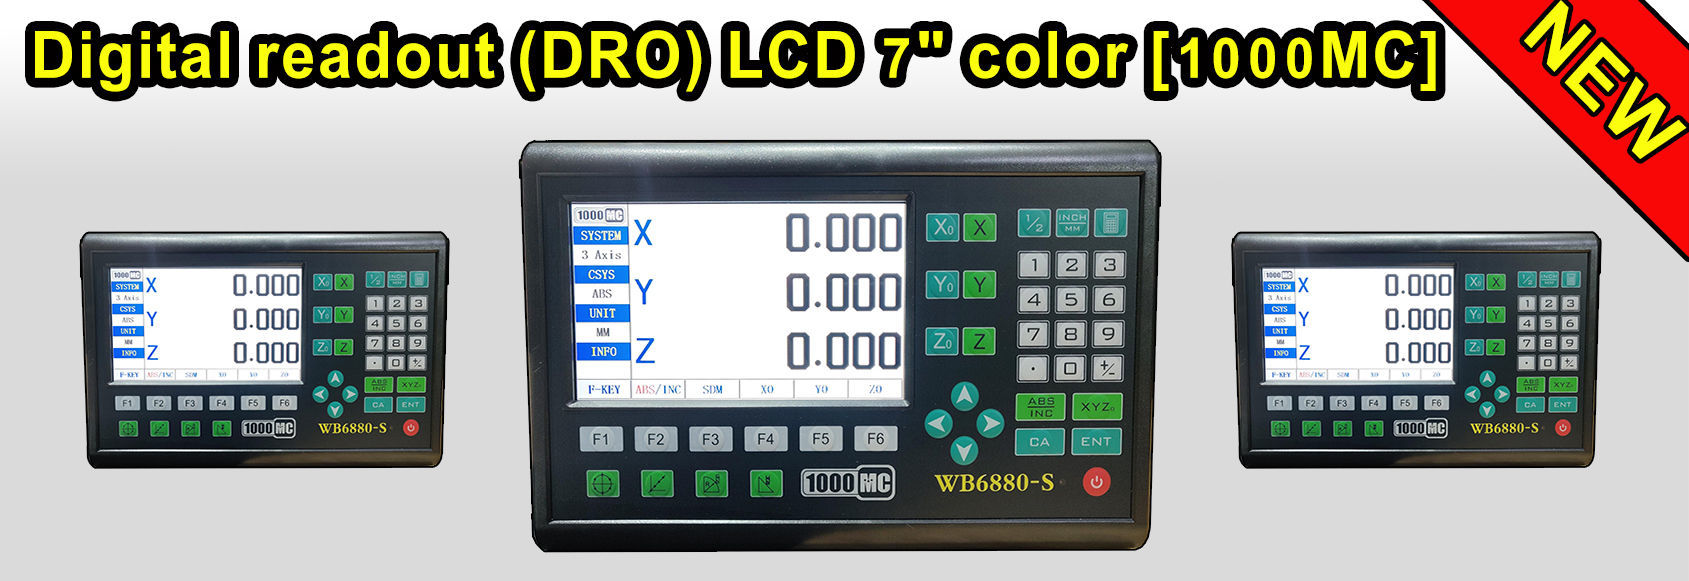 Digital readout LCD 1000MC